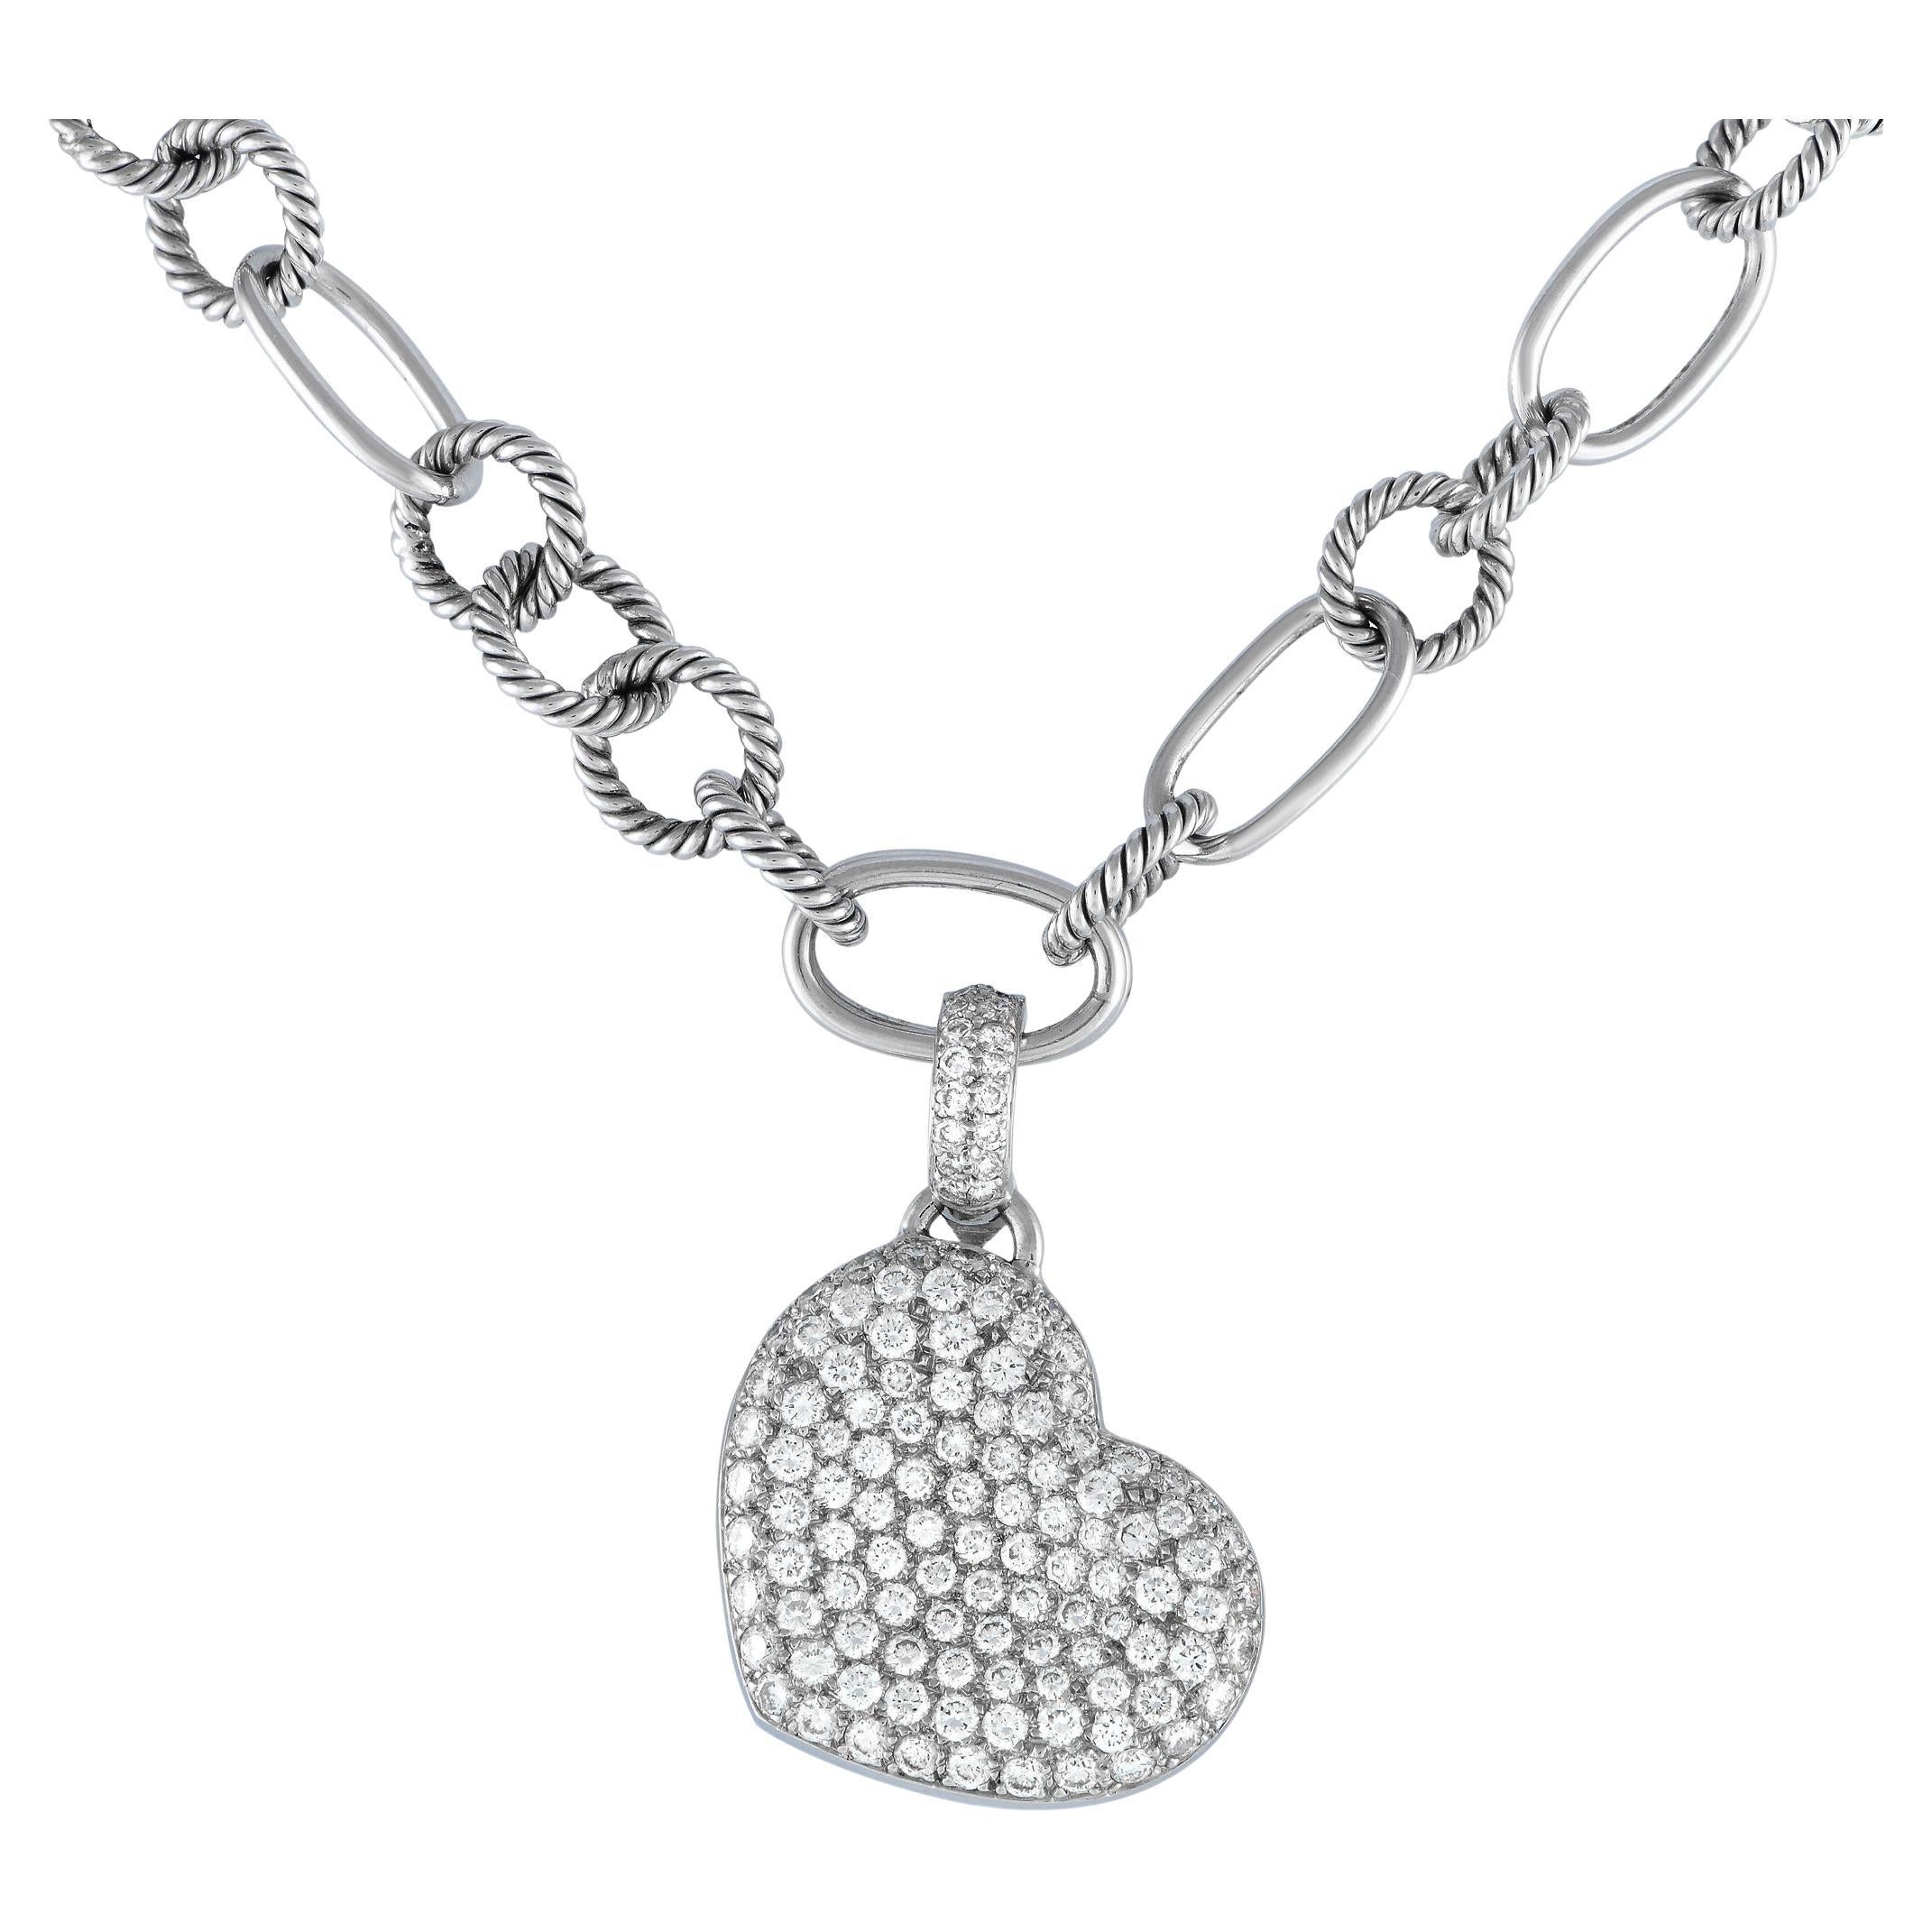 LB Exclusive 18k White Gold 5.0 Carat Diamond Heart Pendant Necklace For Sale